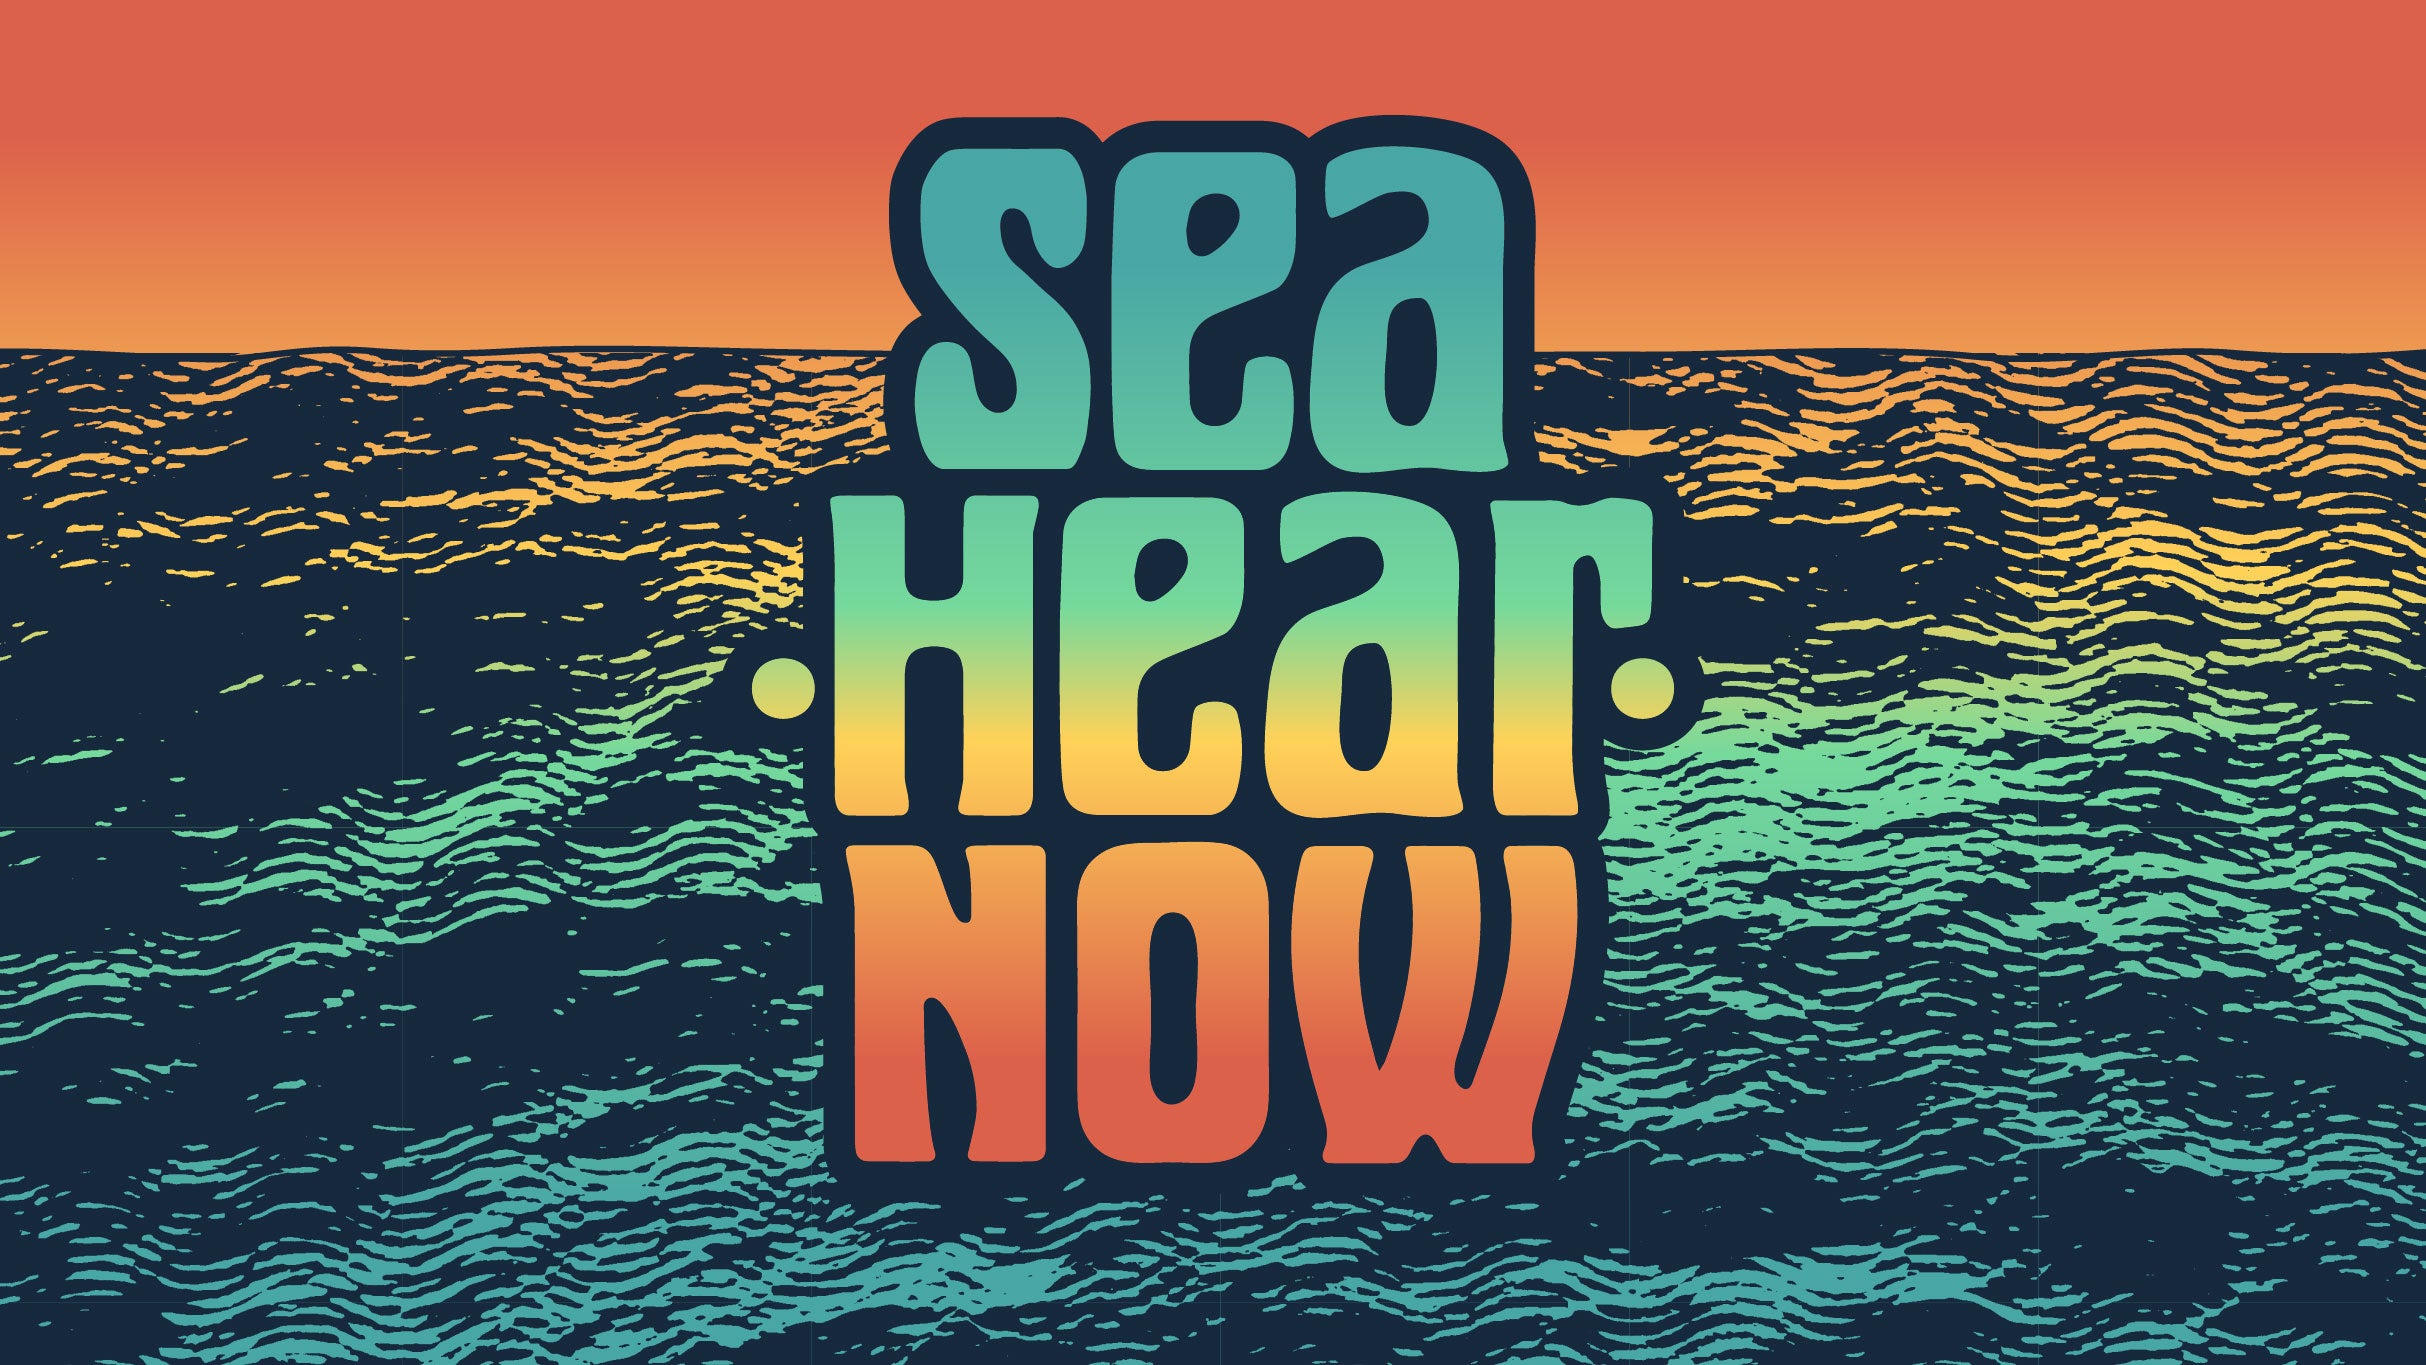 Sea.Hear.Now Festival at North Beach Asbury Park